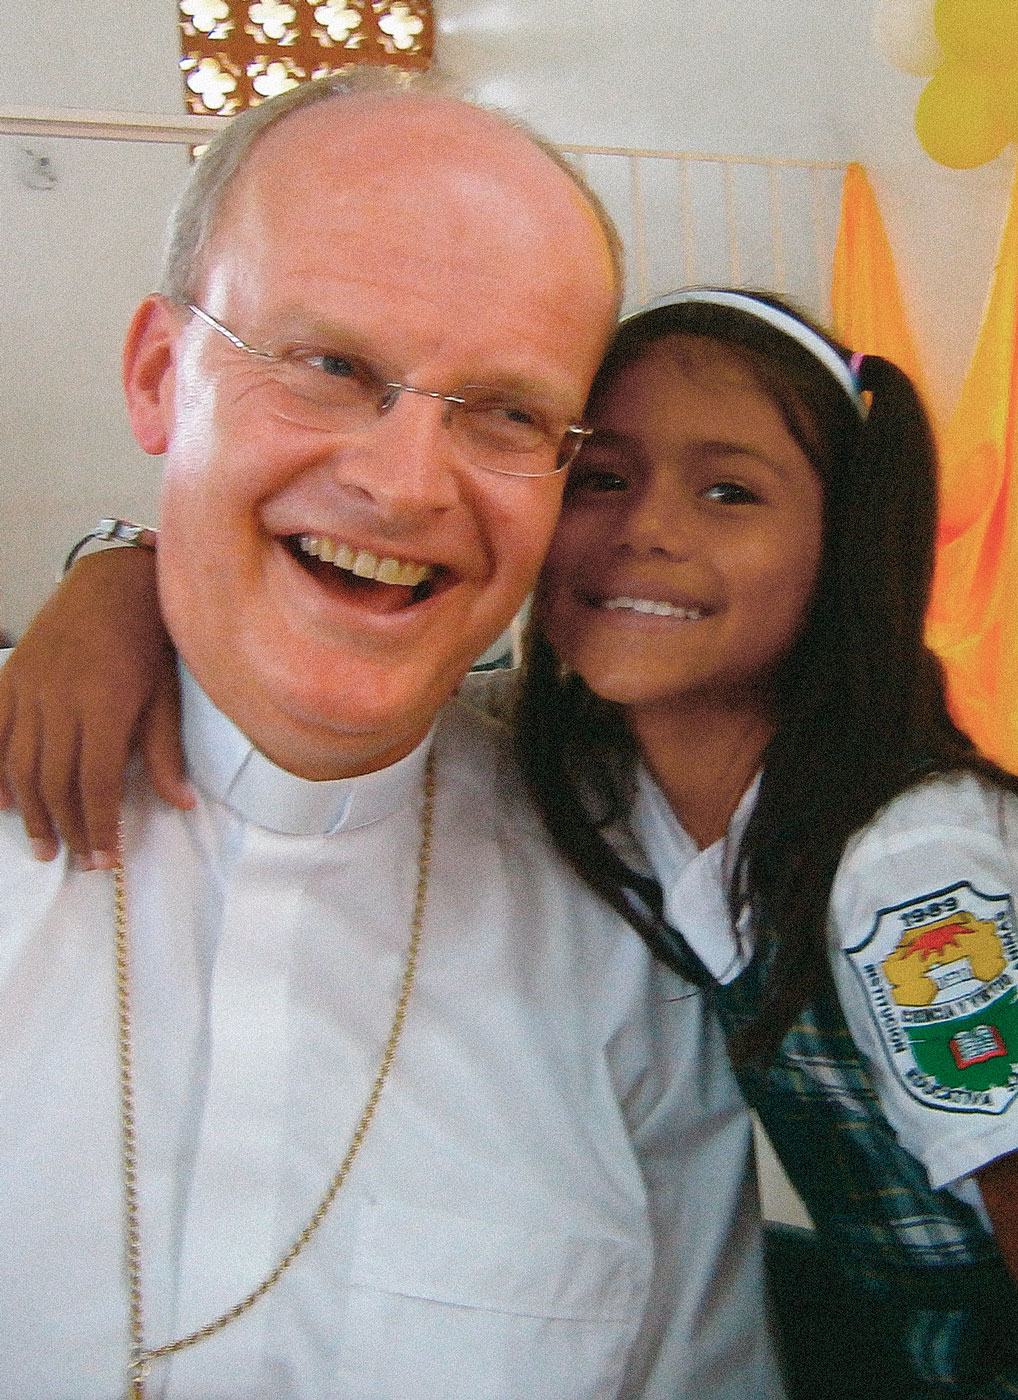 Begegnungen mit den Kindern, die insbesondere unter der Gewalt leiden, waren Essens Bischof Dr. Franz-Josef Overbeck bei seinem Besuch mit dem Adveniat-Hilfswerk in Kolumbien ganz besonders wichtig